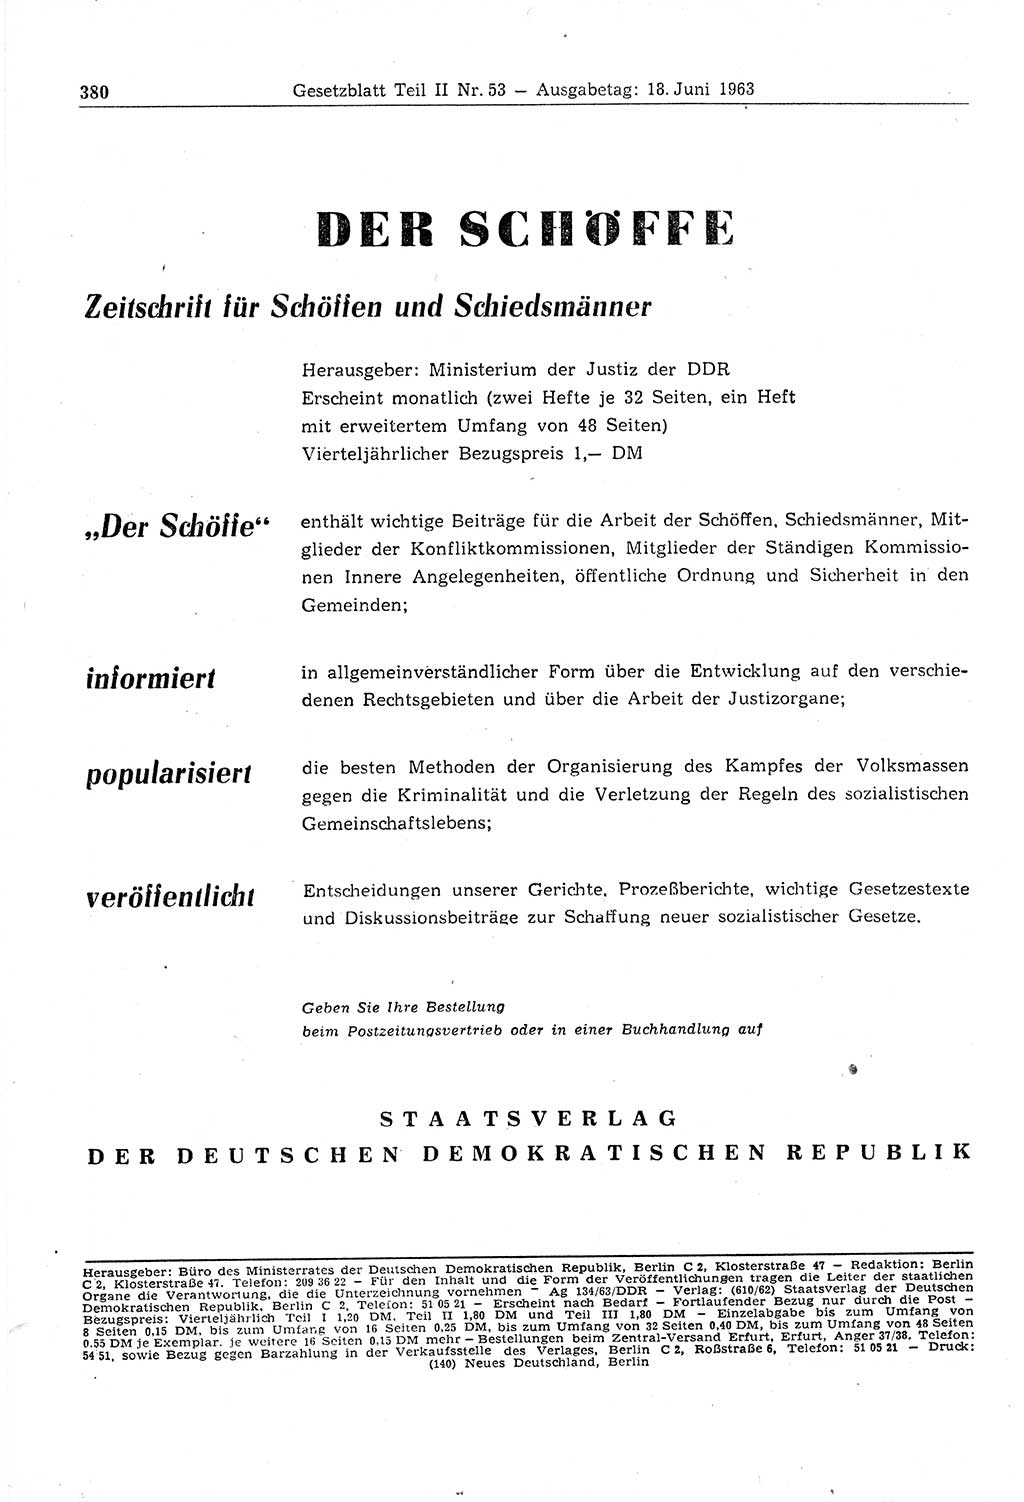 Gesetzblatt (GBl.) der Deutschen Demokratischen Republik (DDR) Teil ⅠⅠ 1963, Seite 380 (GBl. DDR ⅠⅠ 1963, S. 380)